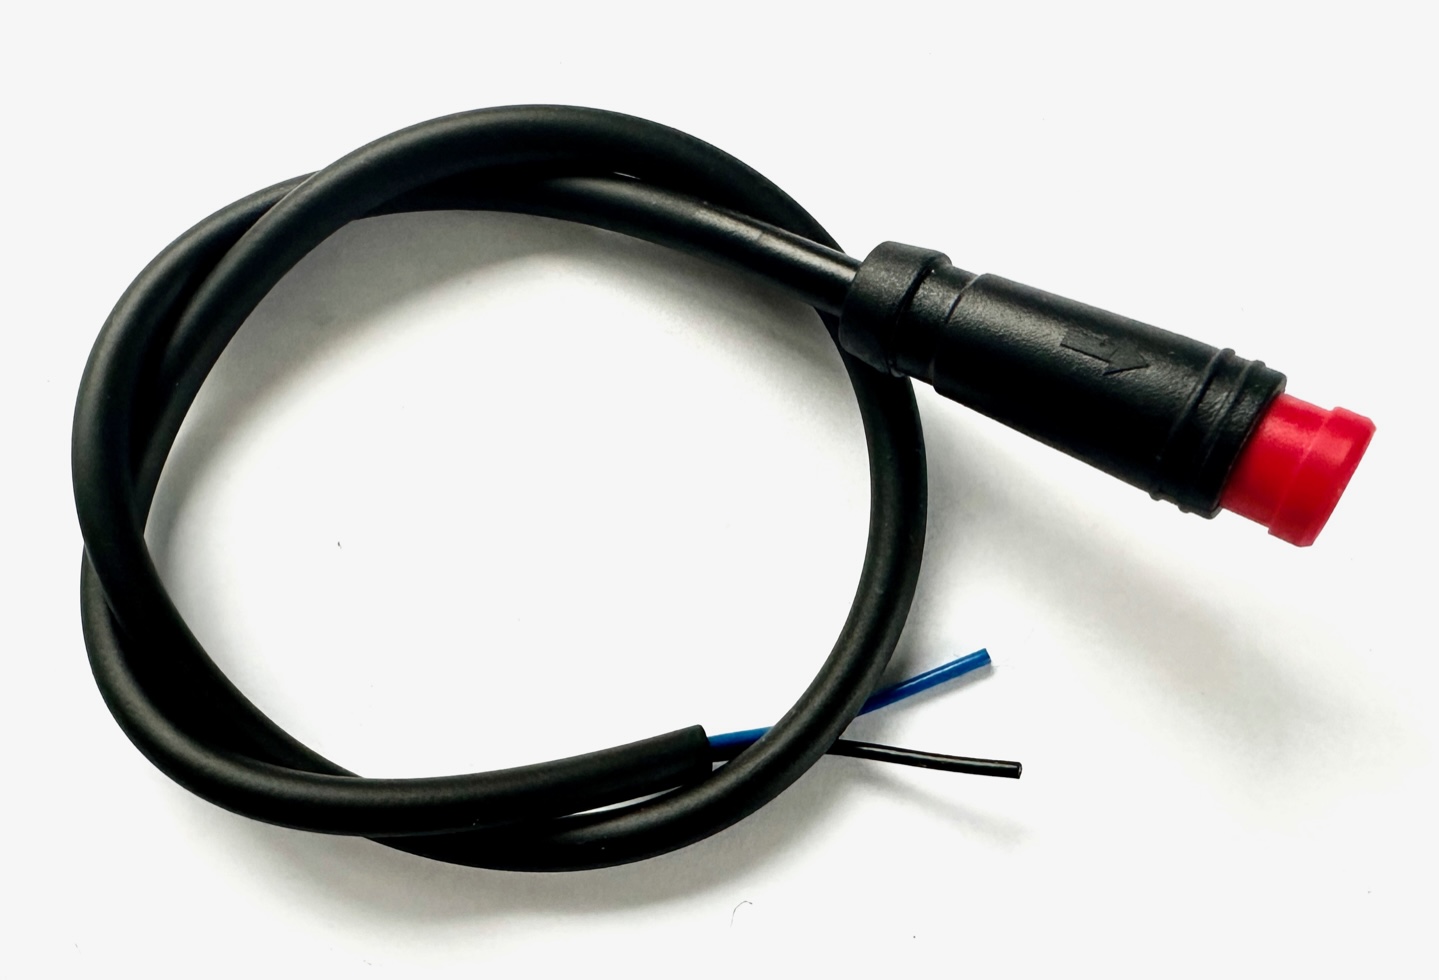 HIGO / Julet cable de extensión de 30 cm para ebike, 2 PIN macho